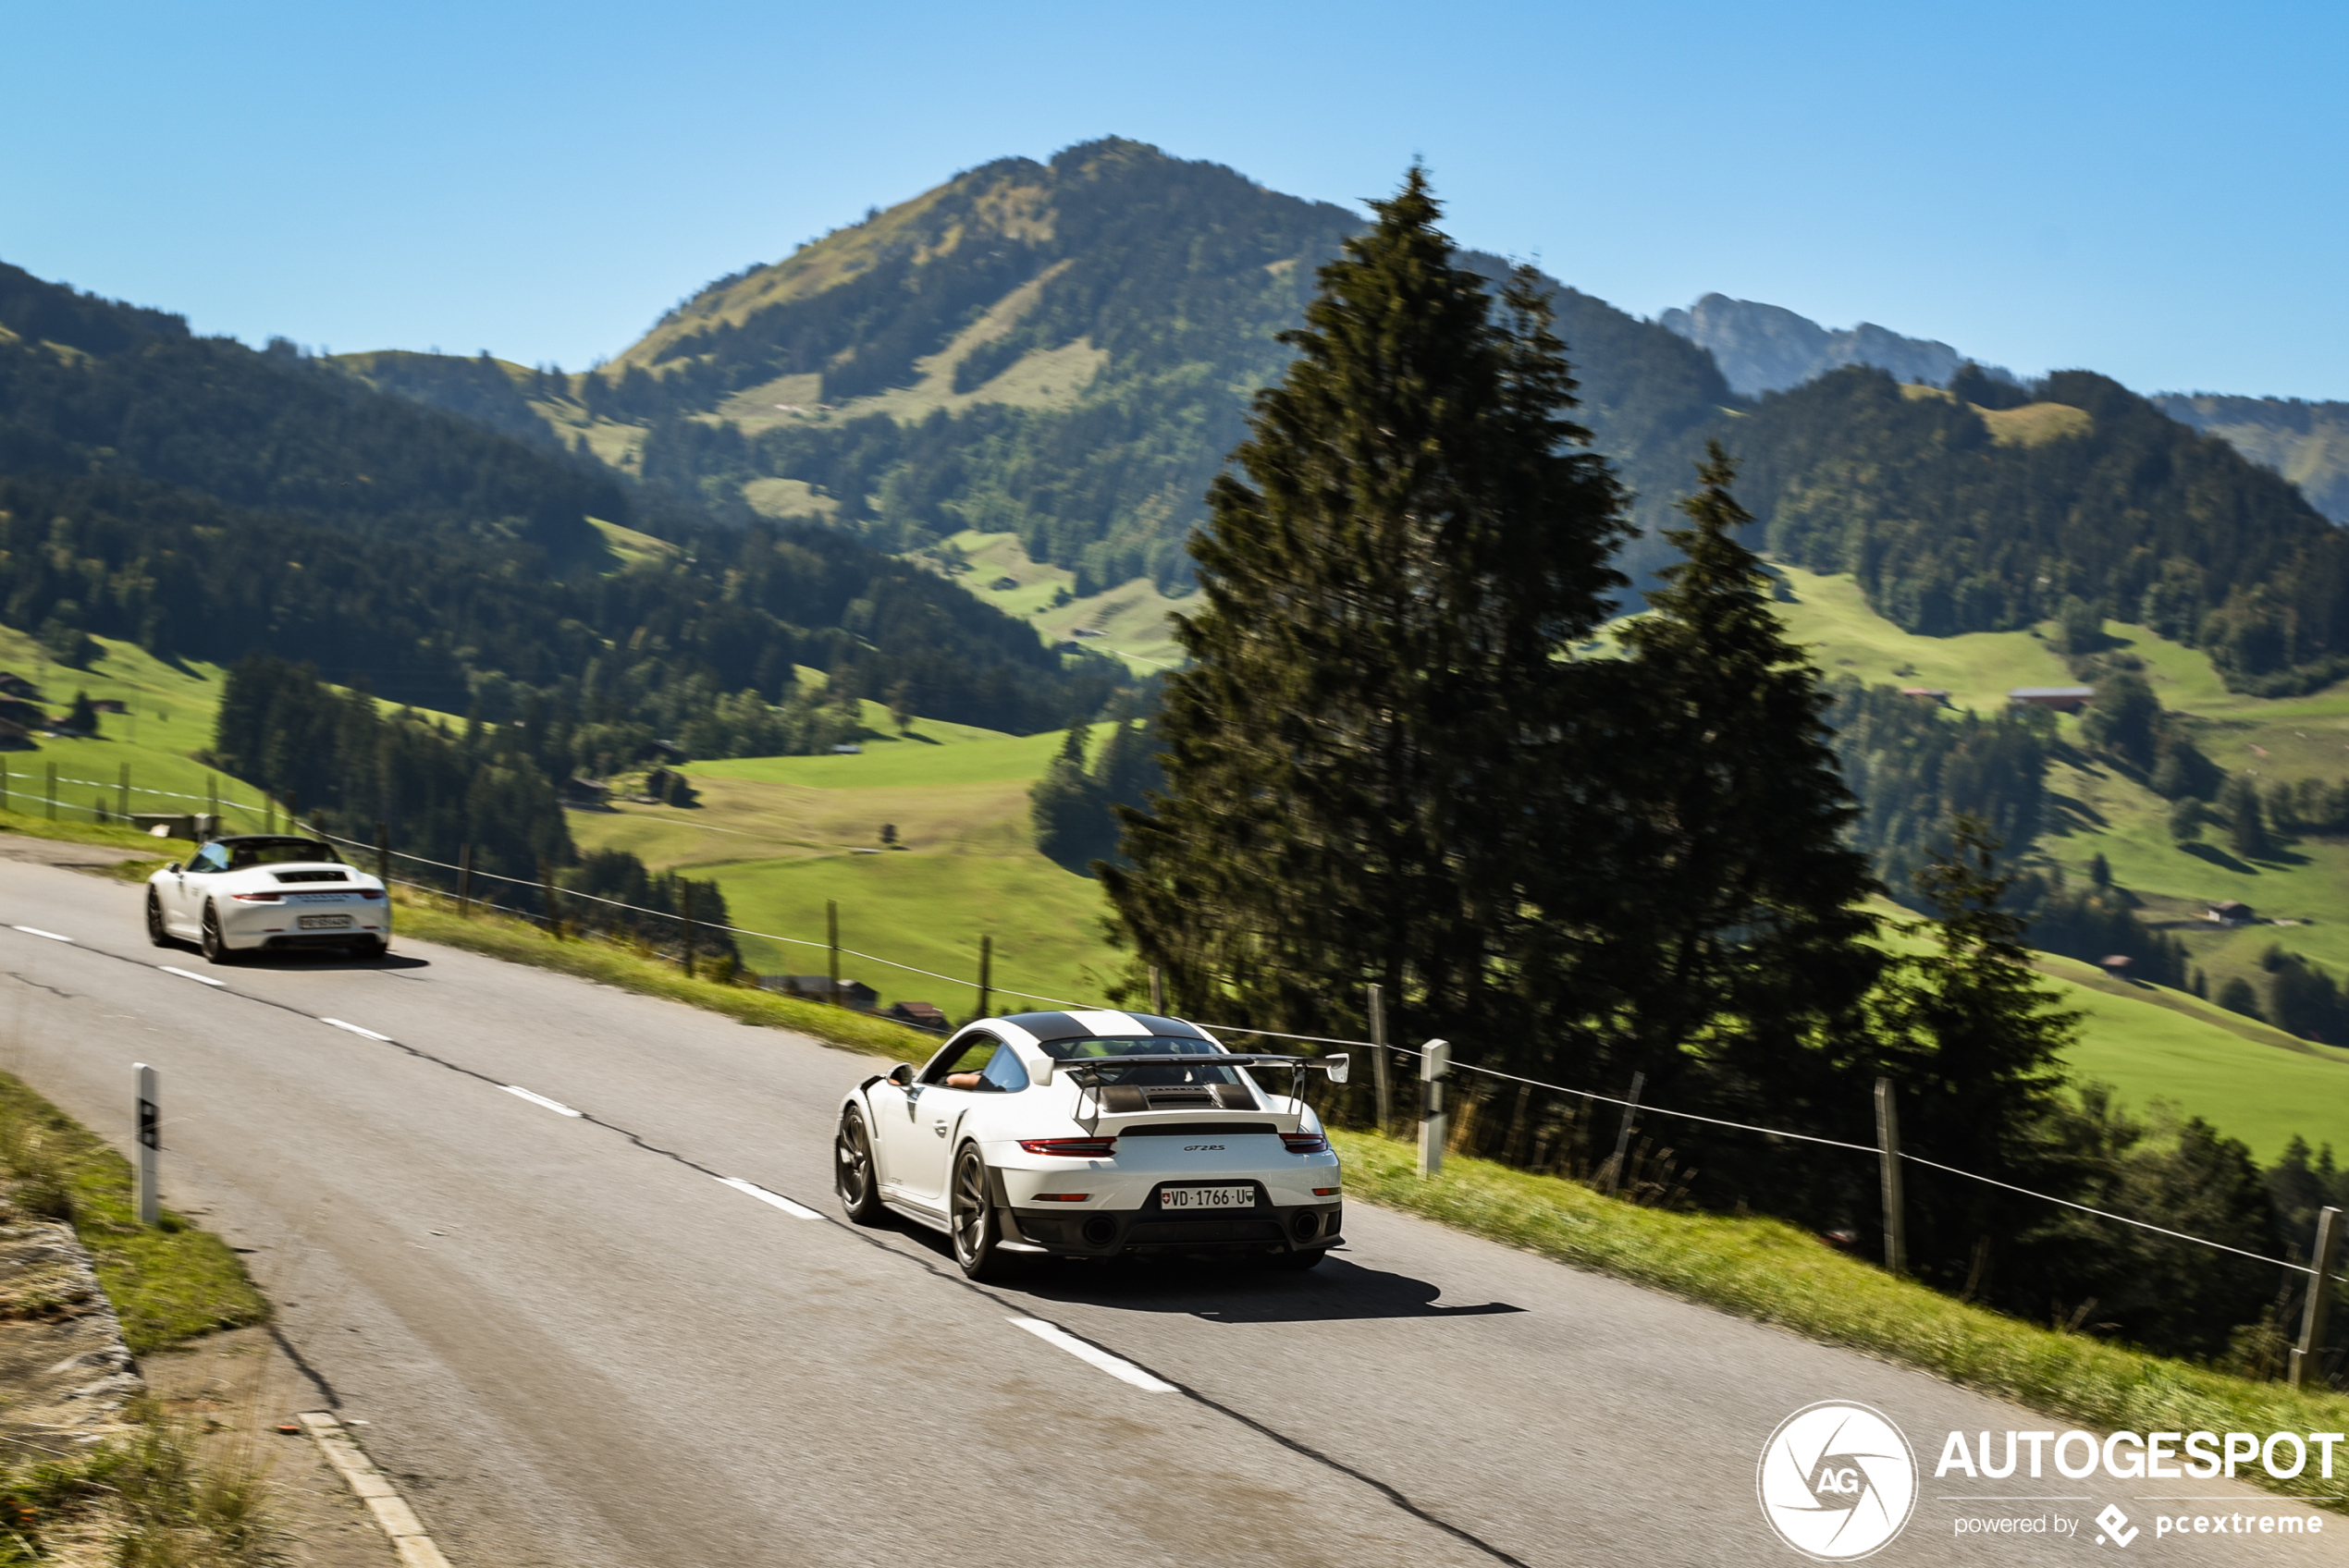 Perfect voor vrijdag: per Porsche GT2 RS de bergen in